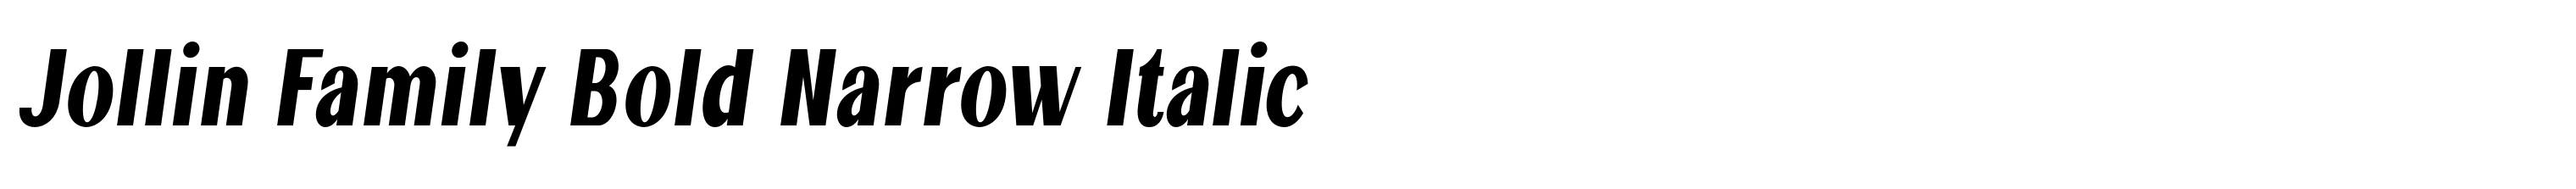 Jollin Family Bold Narrow Italic